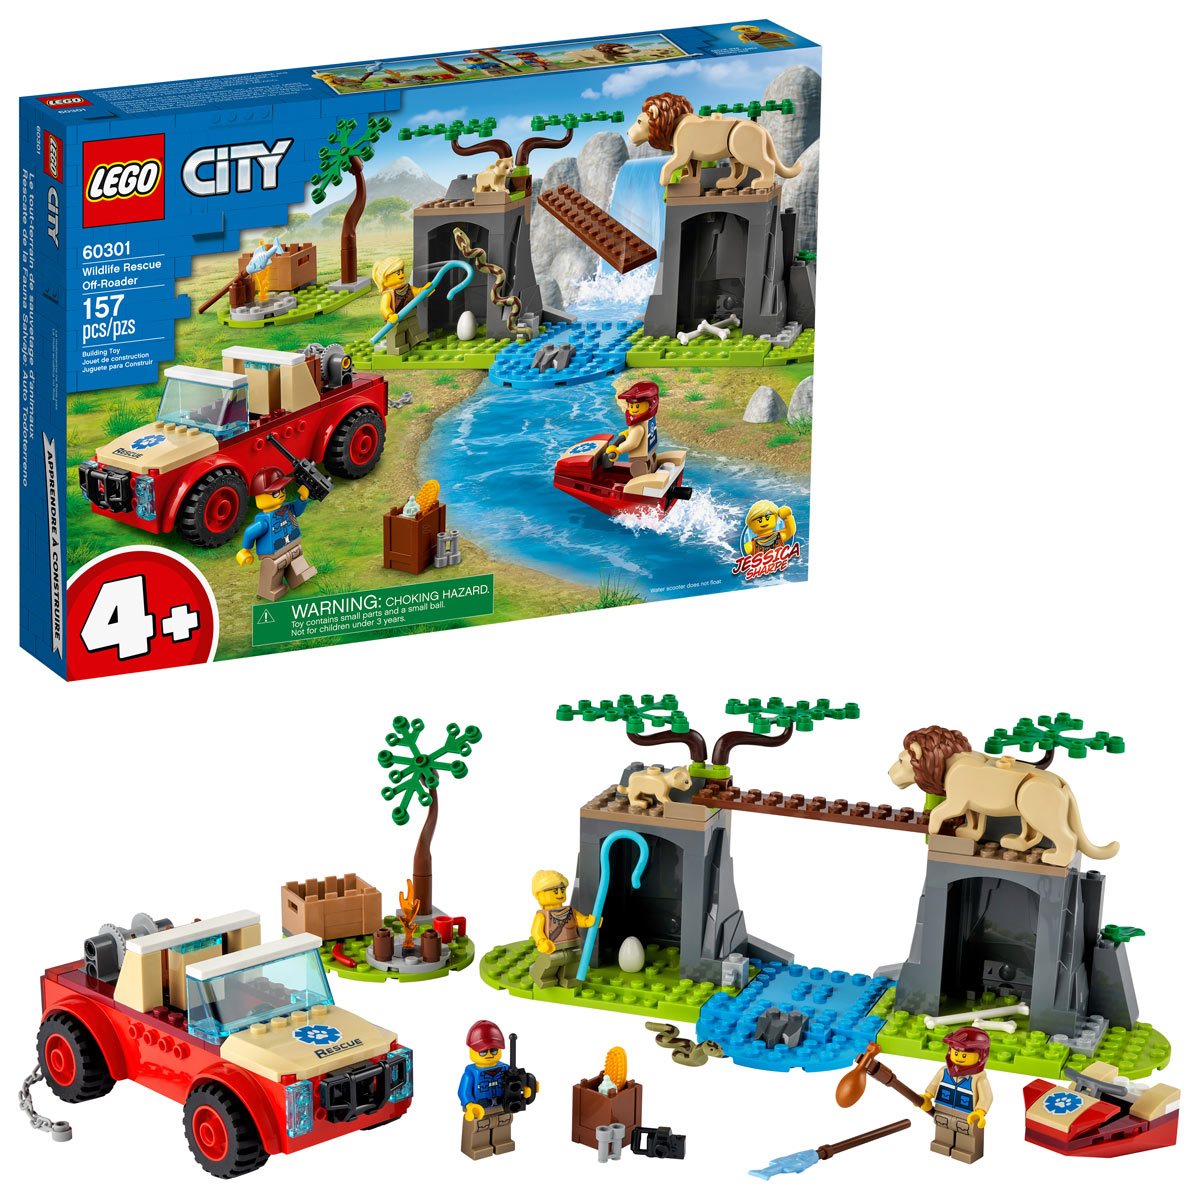 LEGO Town: Auto Repair Shop (6363) for sale online